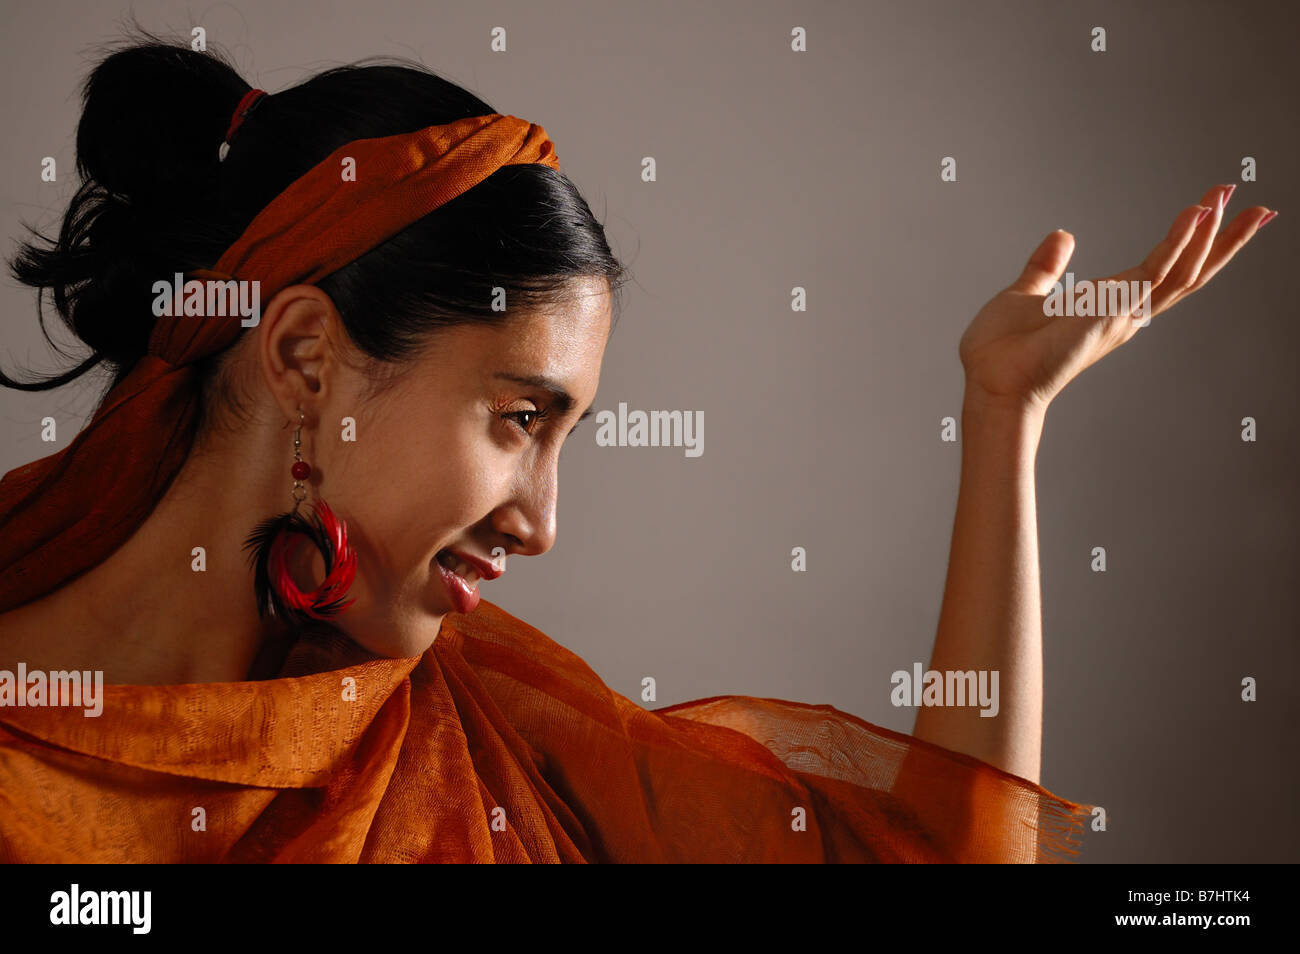 Portrait of Hispanic female flamenco dancer avec voile orange Banque D'Images